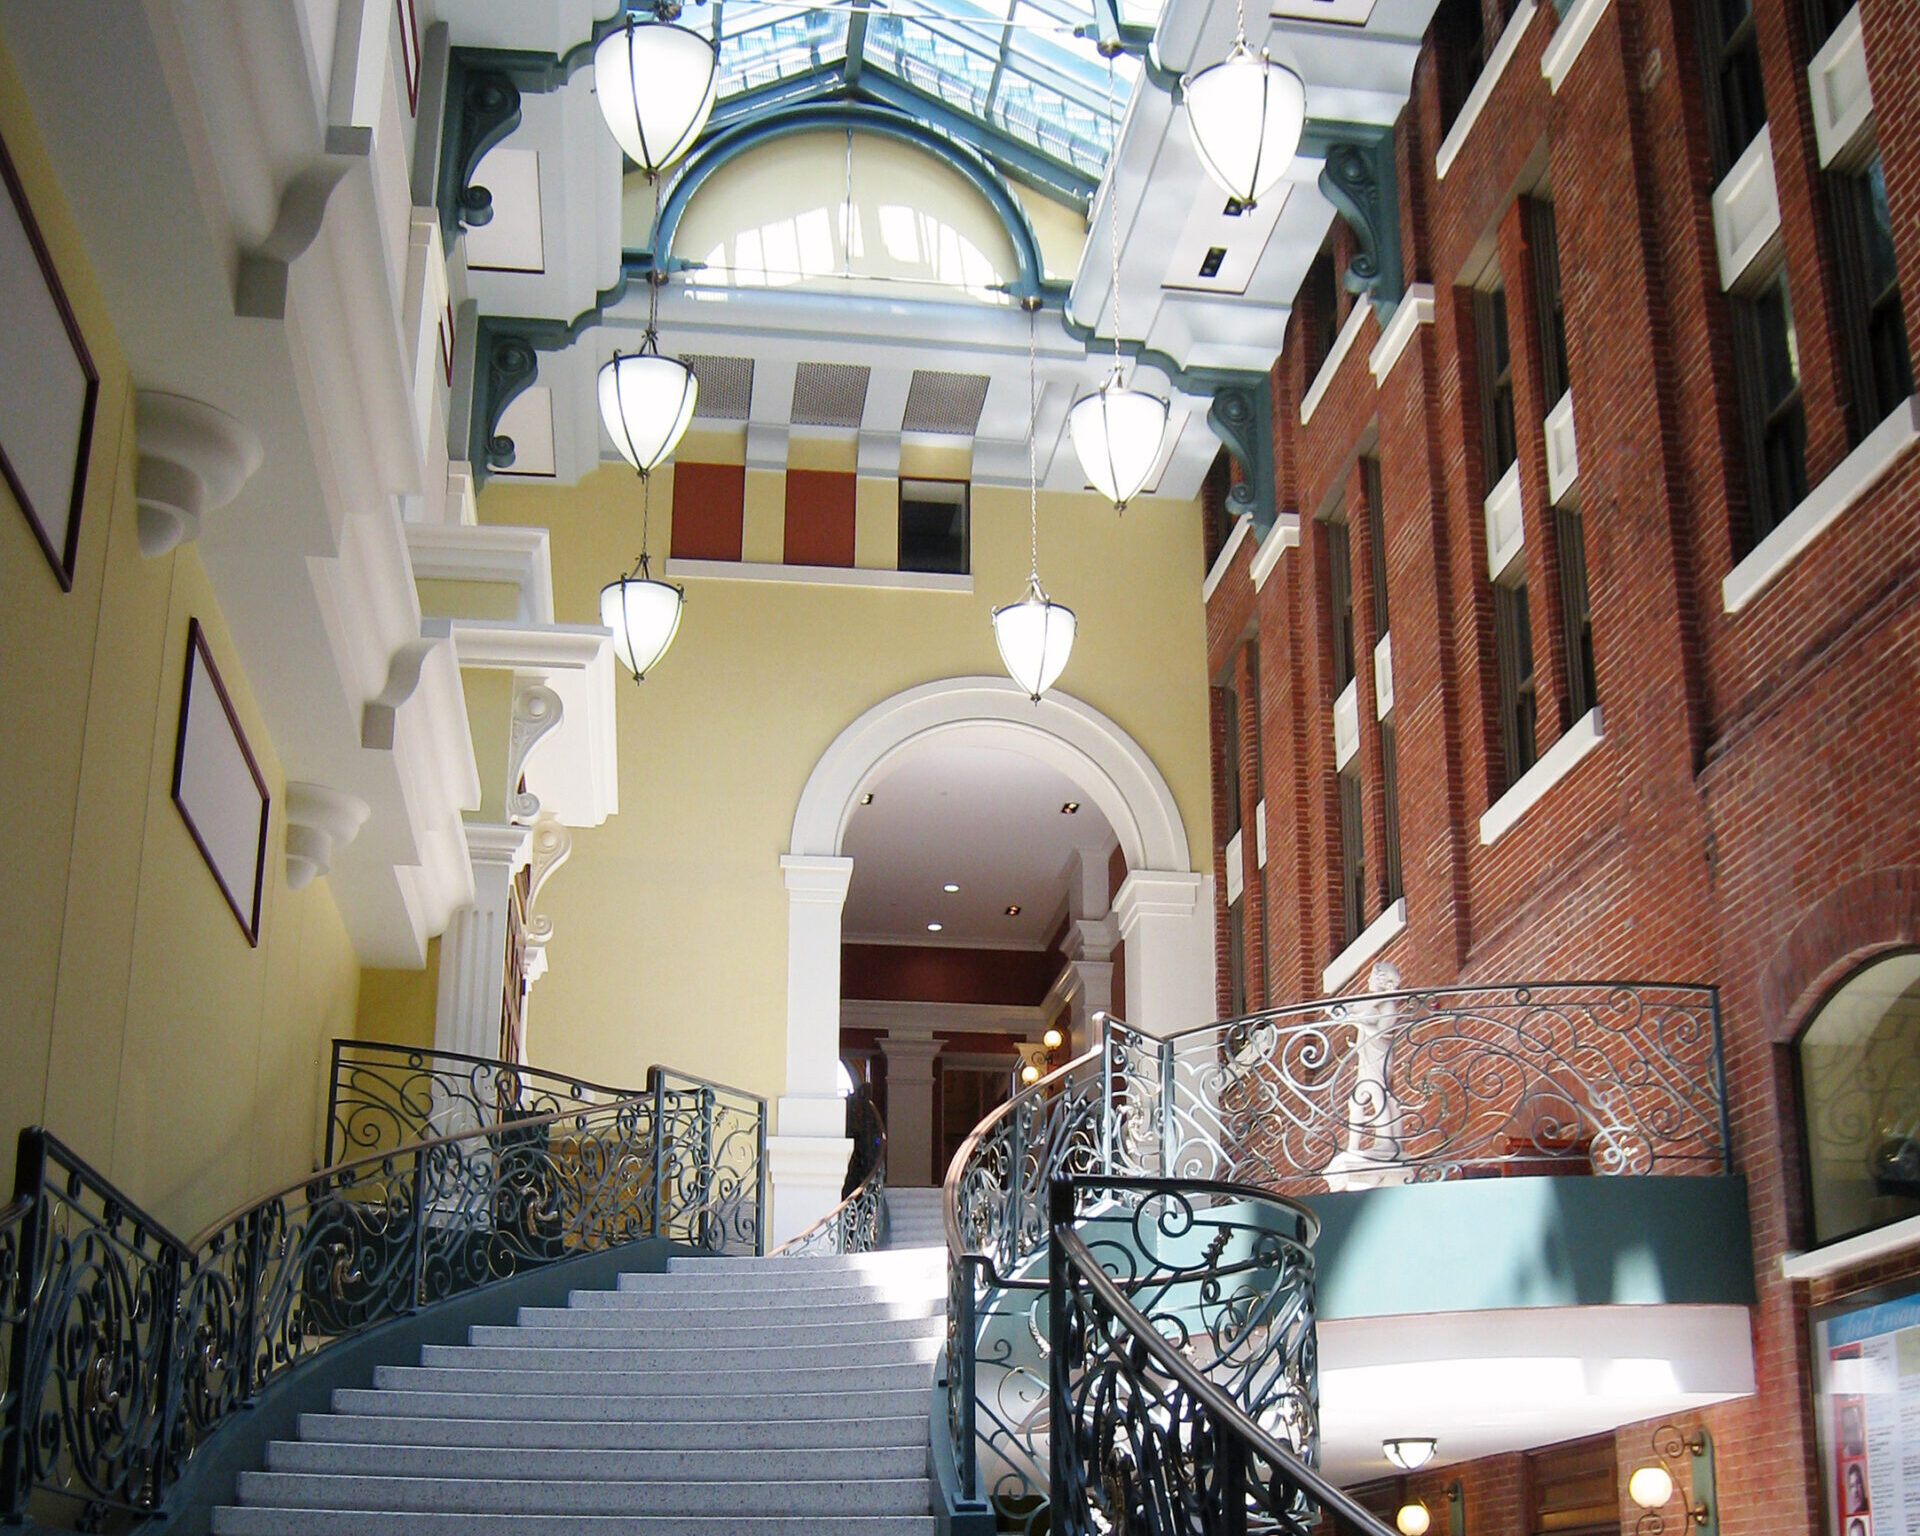 Stairway inside Peabody